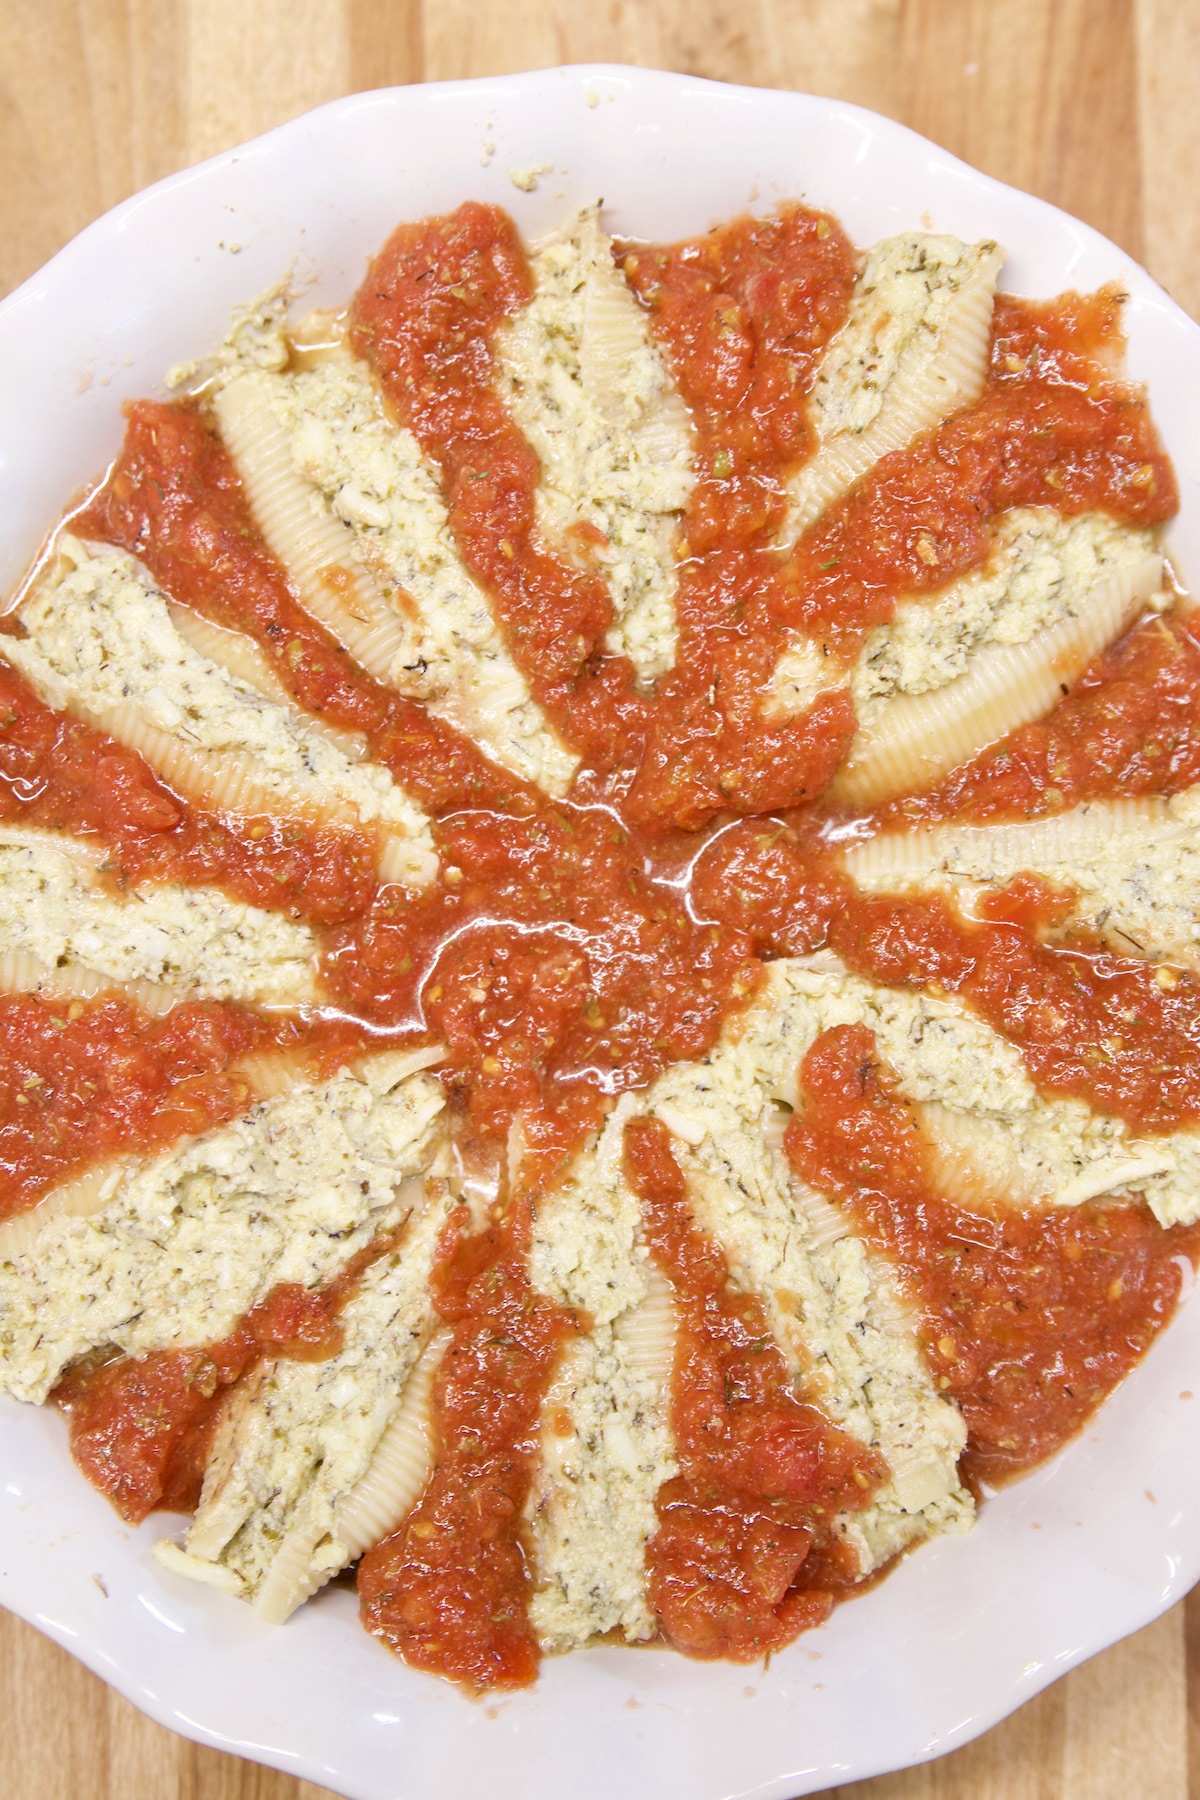 Stuffed jumbo pasta shells in tomato sauce.